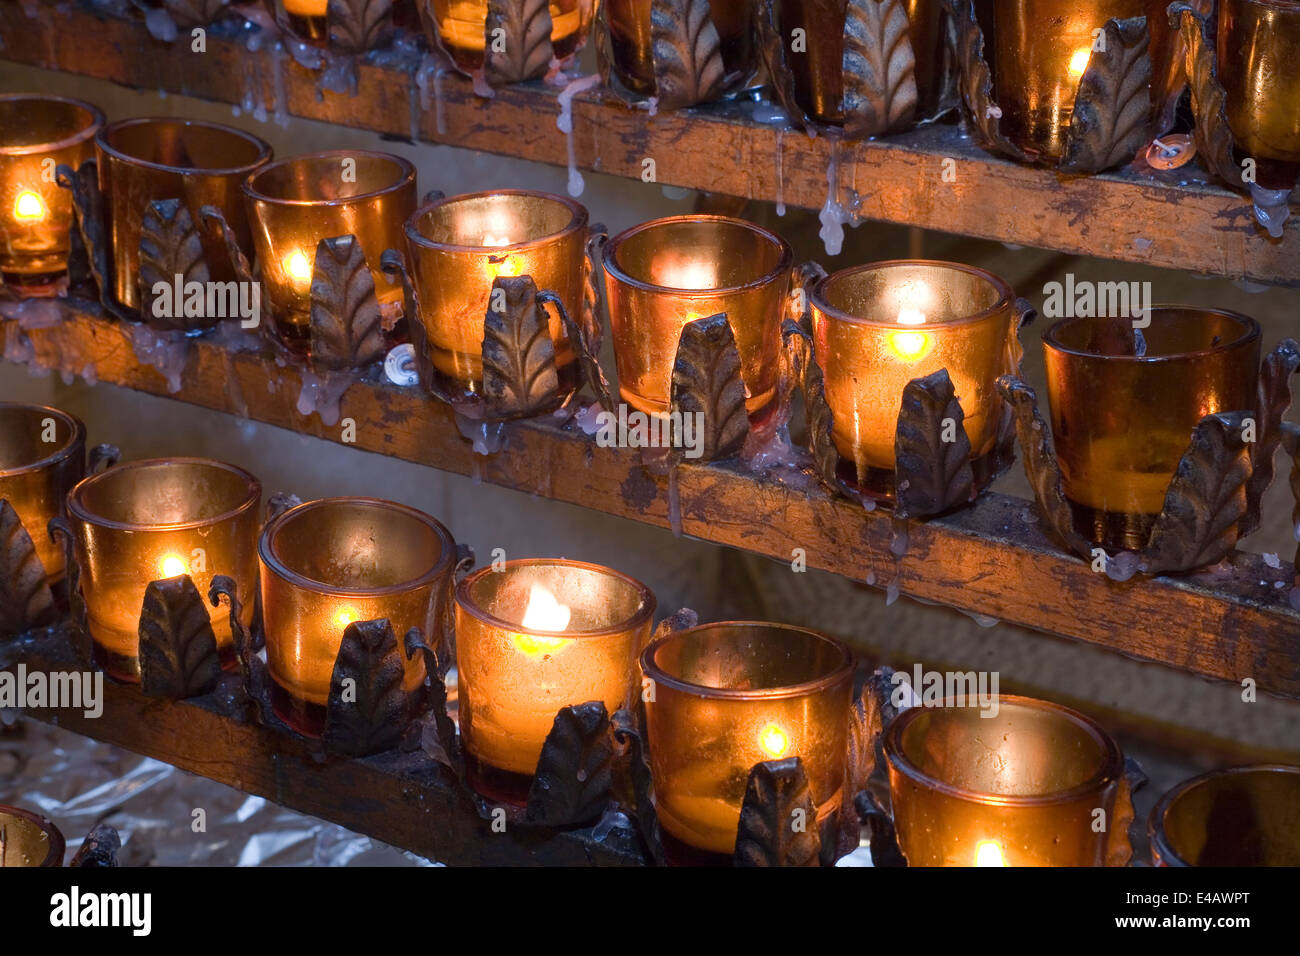 Les bougies allumées pour les prières de l'église et les offres Banque D'Images